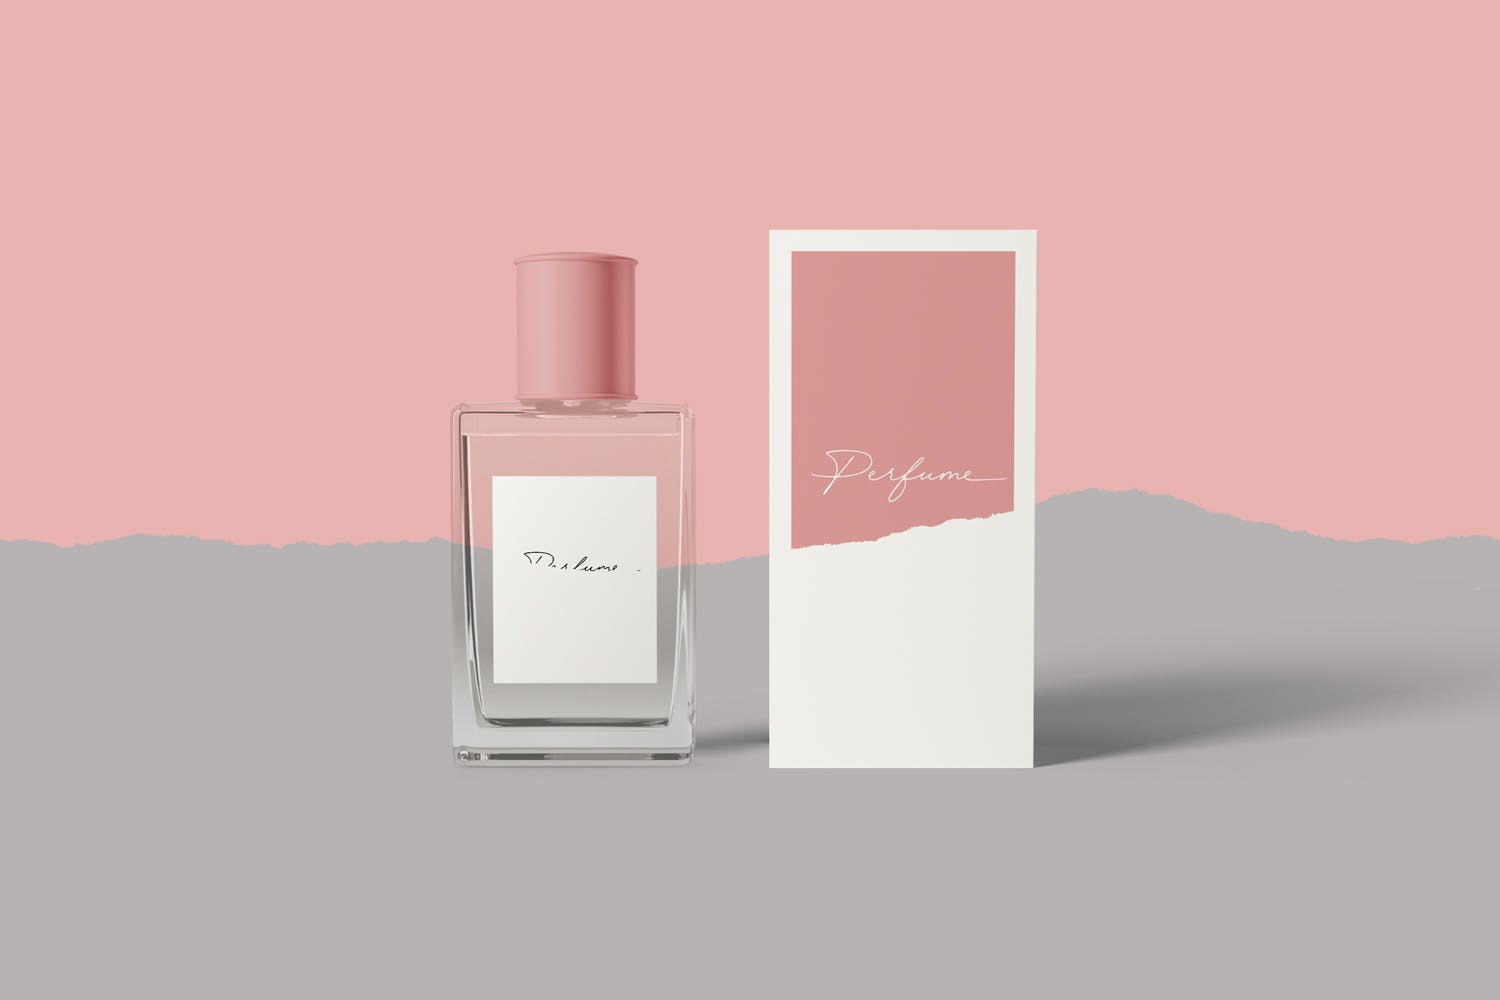 香水瓶外观设计图第一素材精选 Perfume Mockups插图(3)